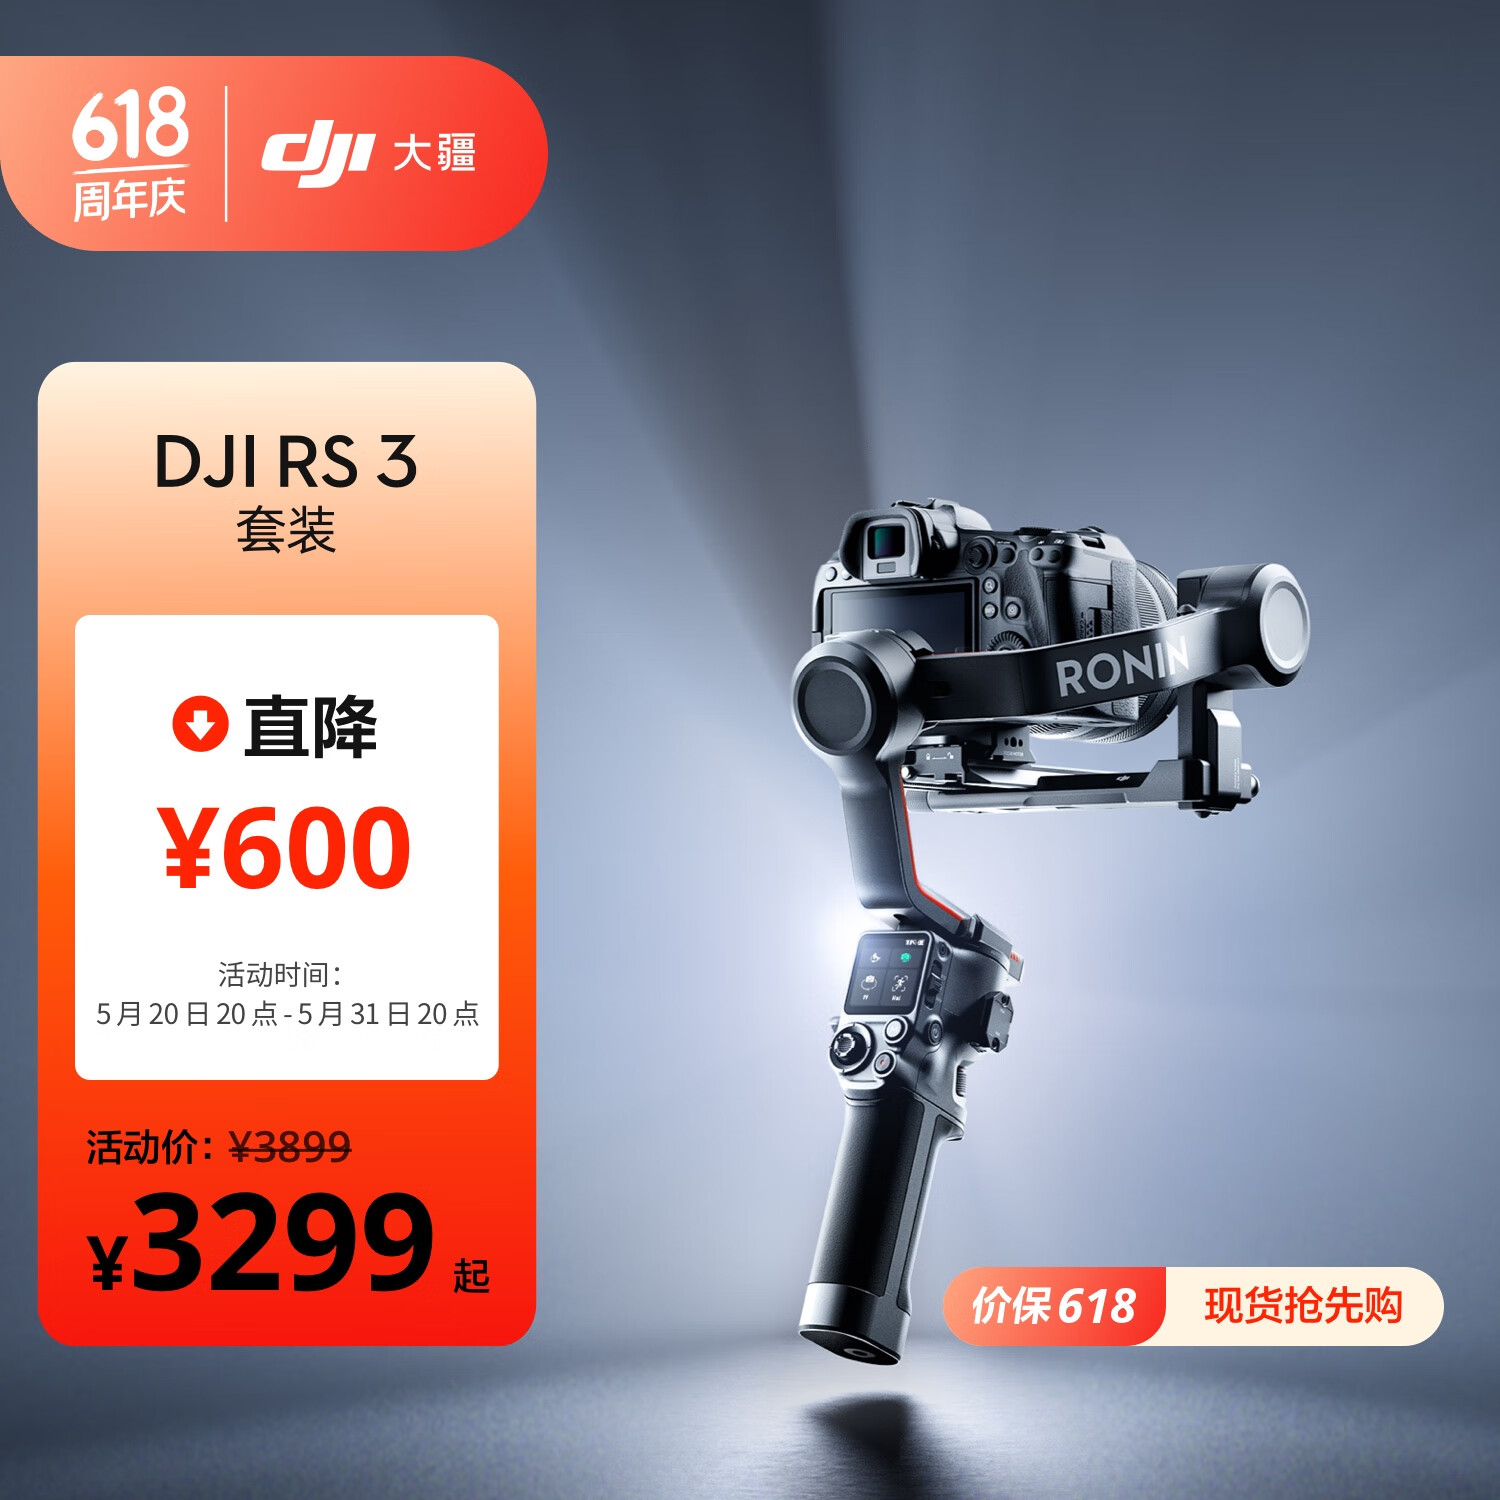 大疆 DJI RS 3 套装 如影s RoninS 手持稳定器 轻量专业防抖拍摄 单反微单相机云台 大疆云台稳定器